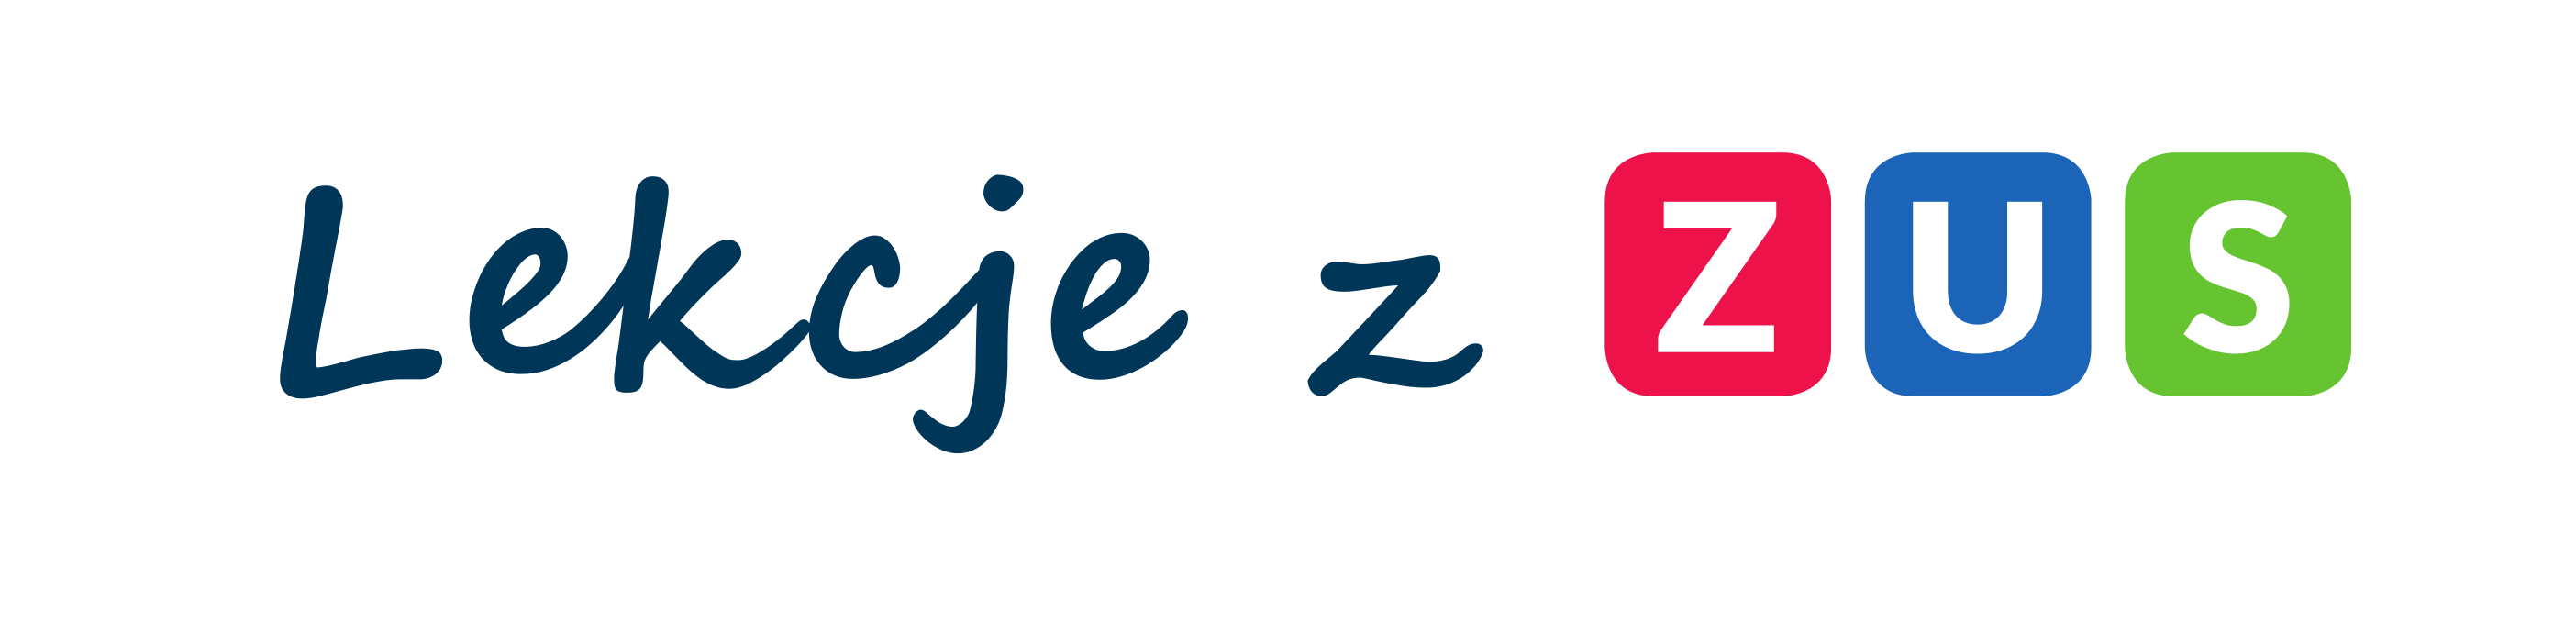 logo projektu Lekcje z ZUS